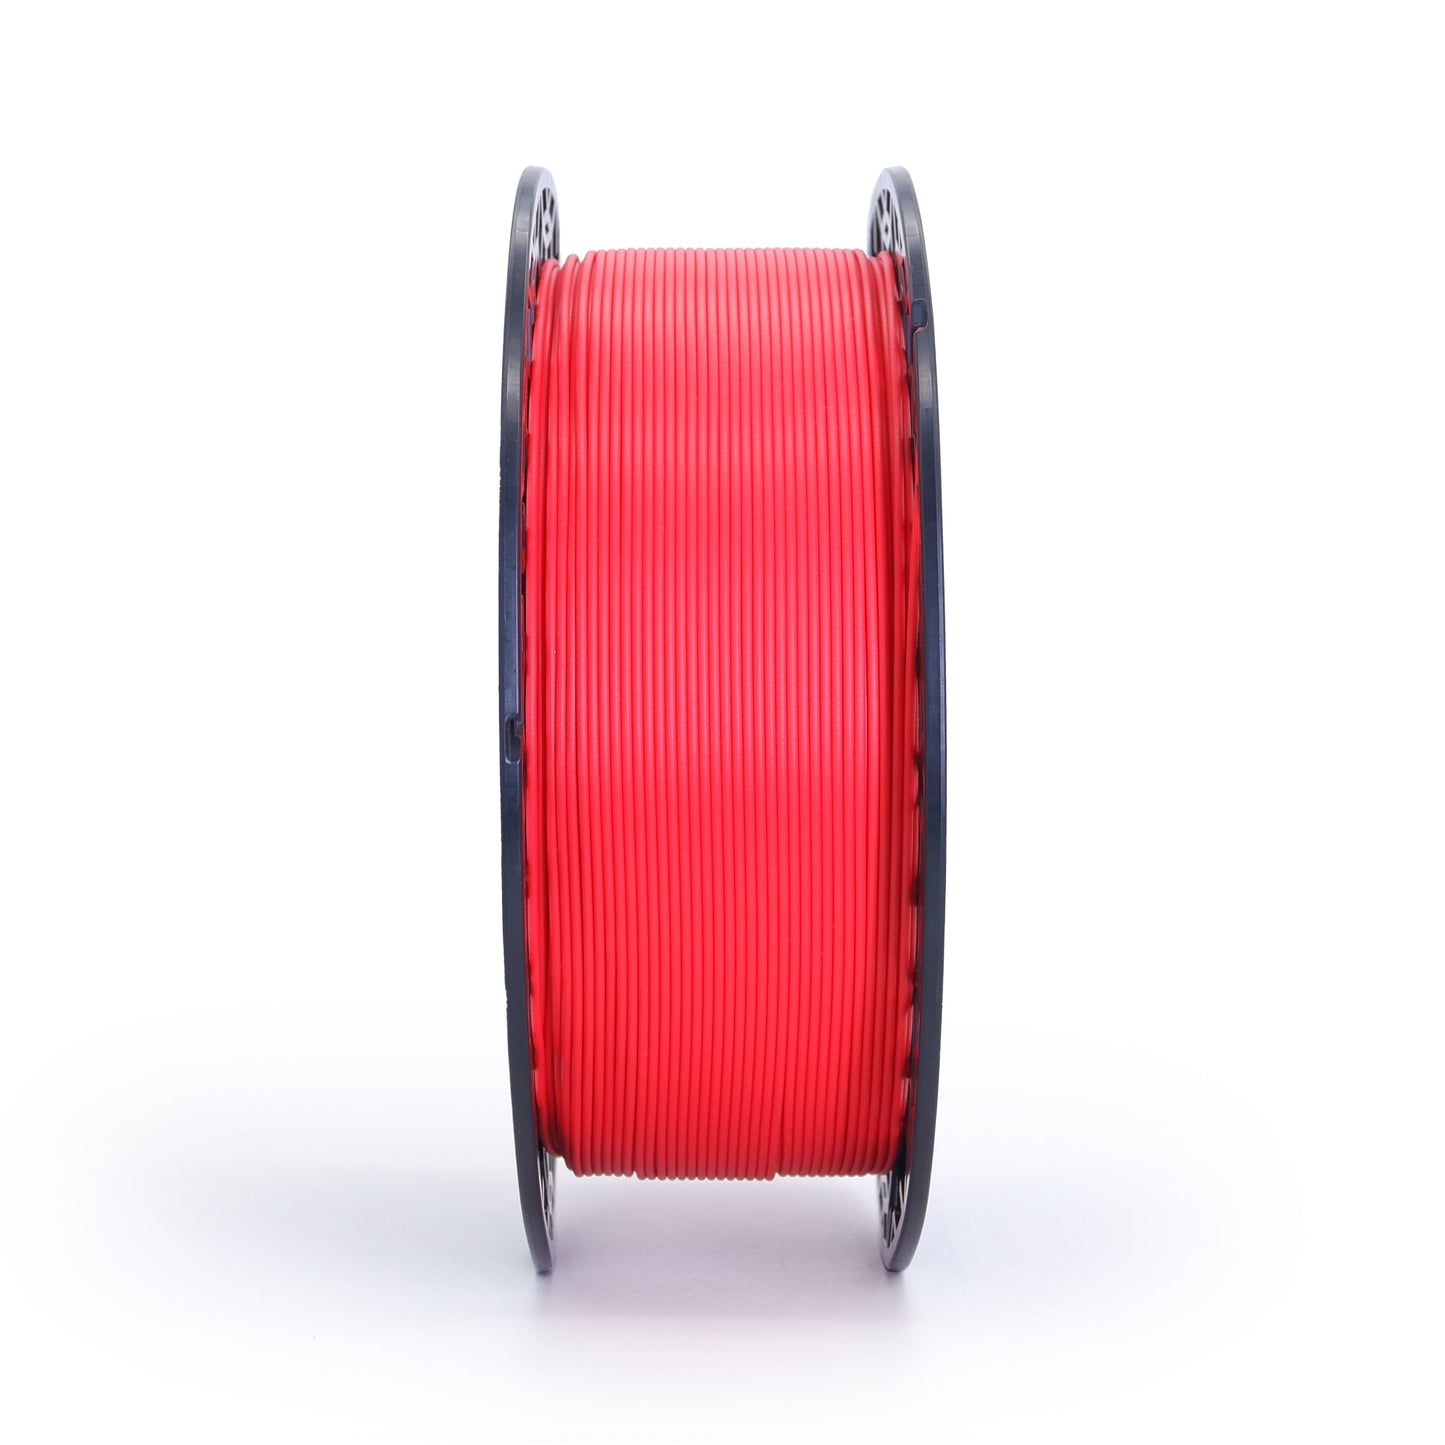 Uzy Pro PLA Filament 1.75mm ± 0.02mm True Red 1Kg